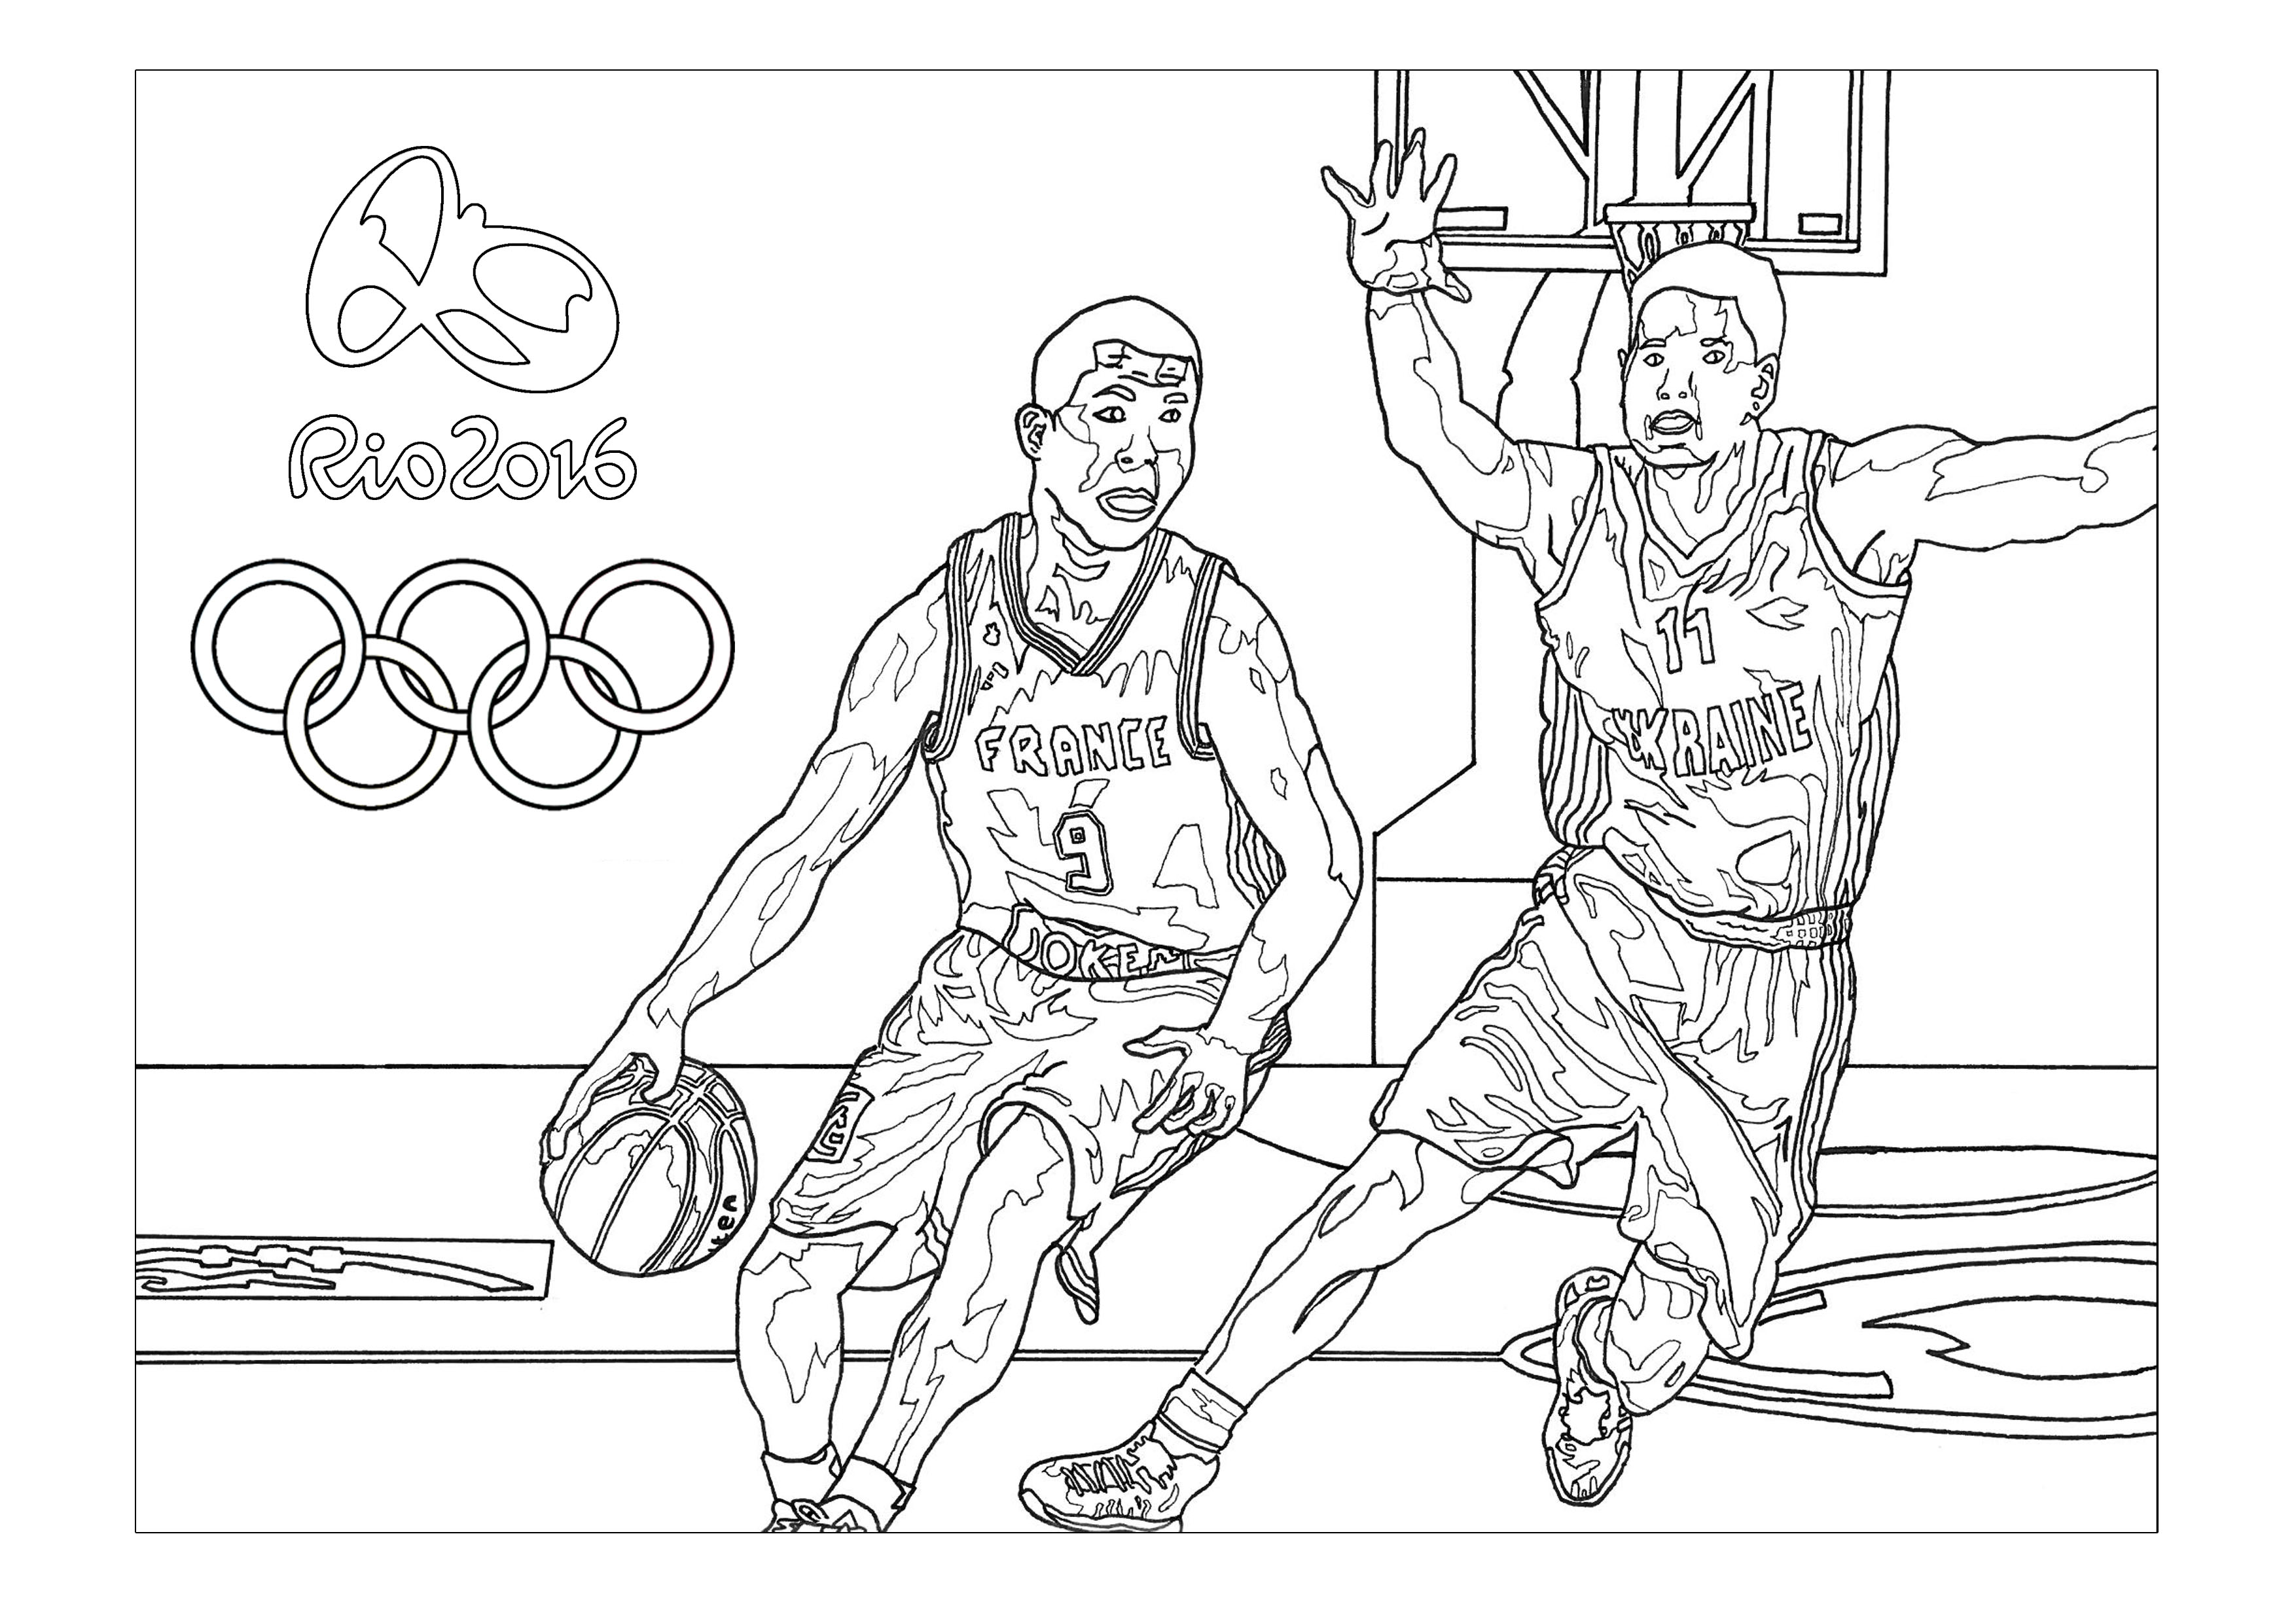 Coloriage jogos Olímpicos Rio 2016 : Basketball